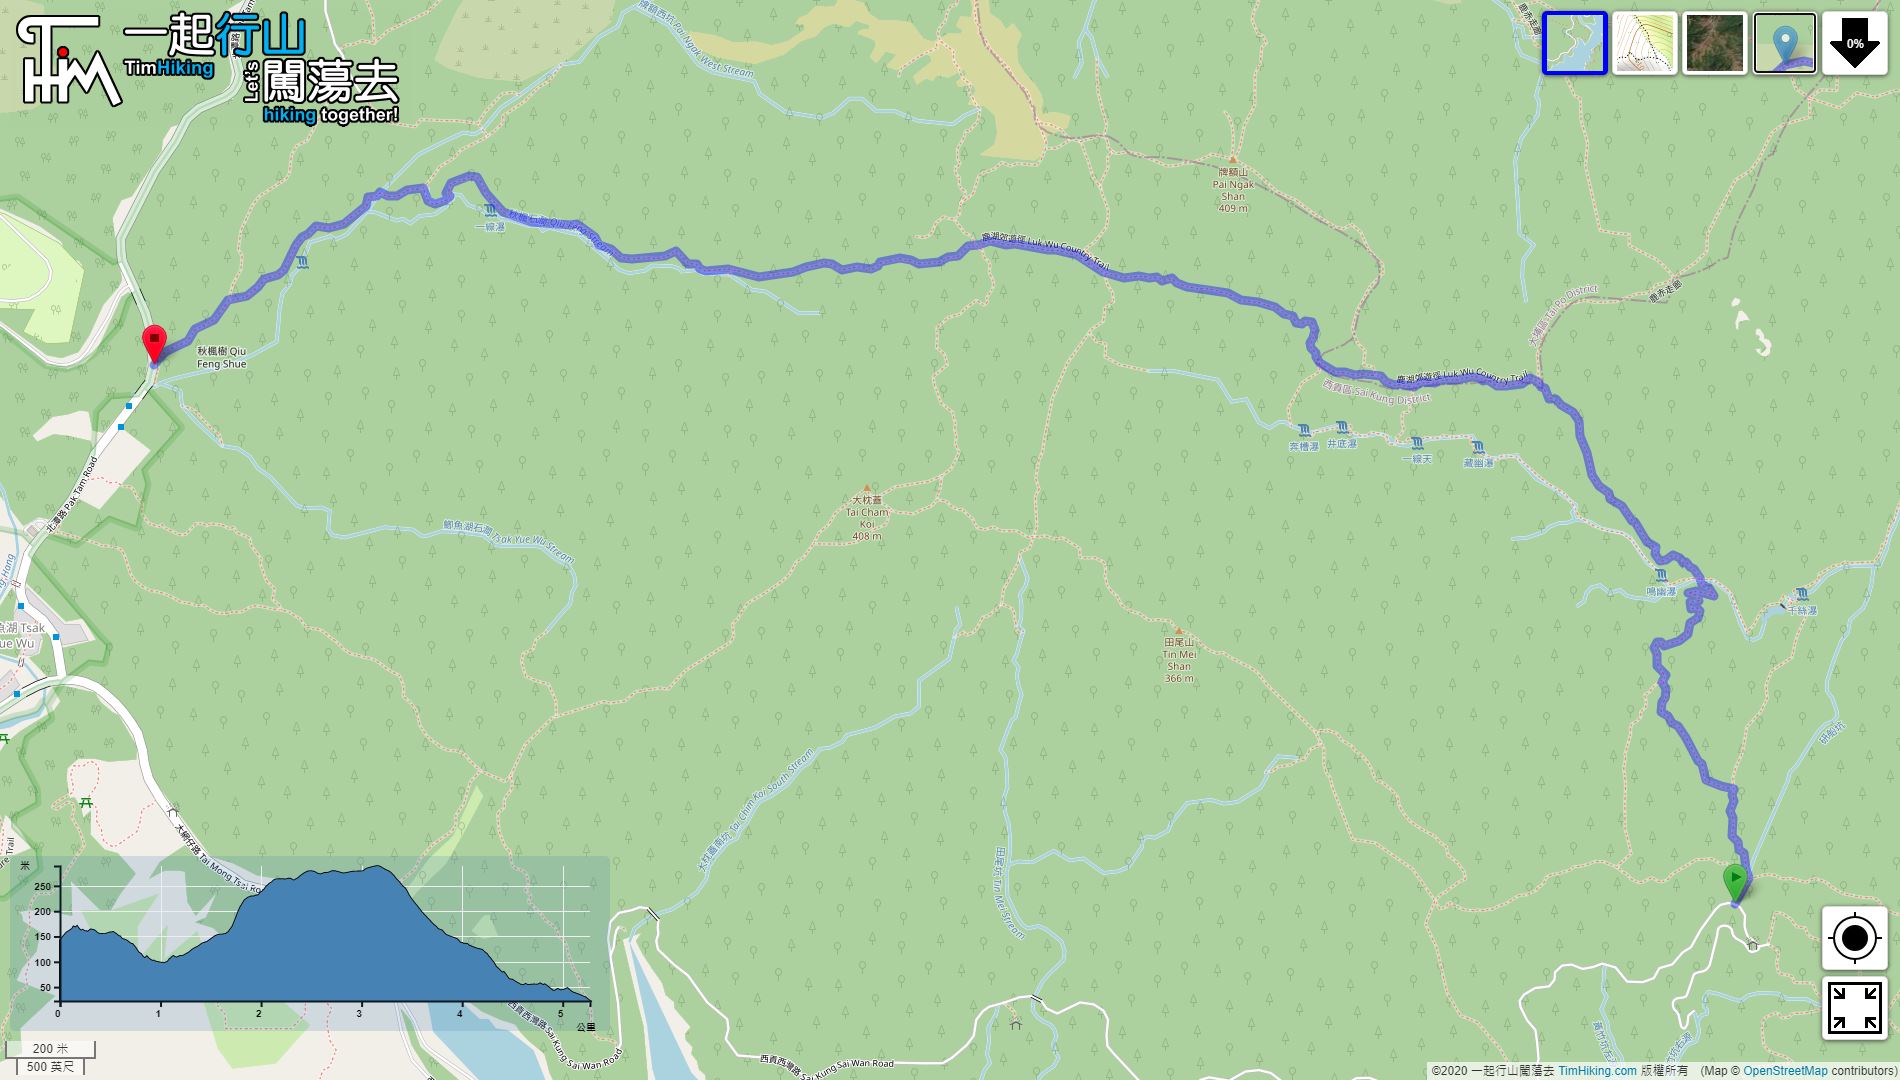 “鹿湖郊游径”路线地图